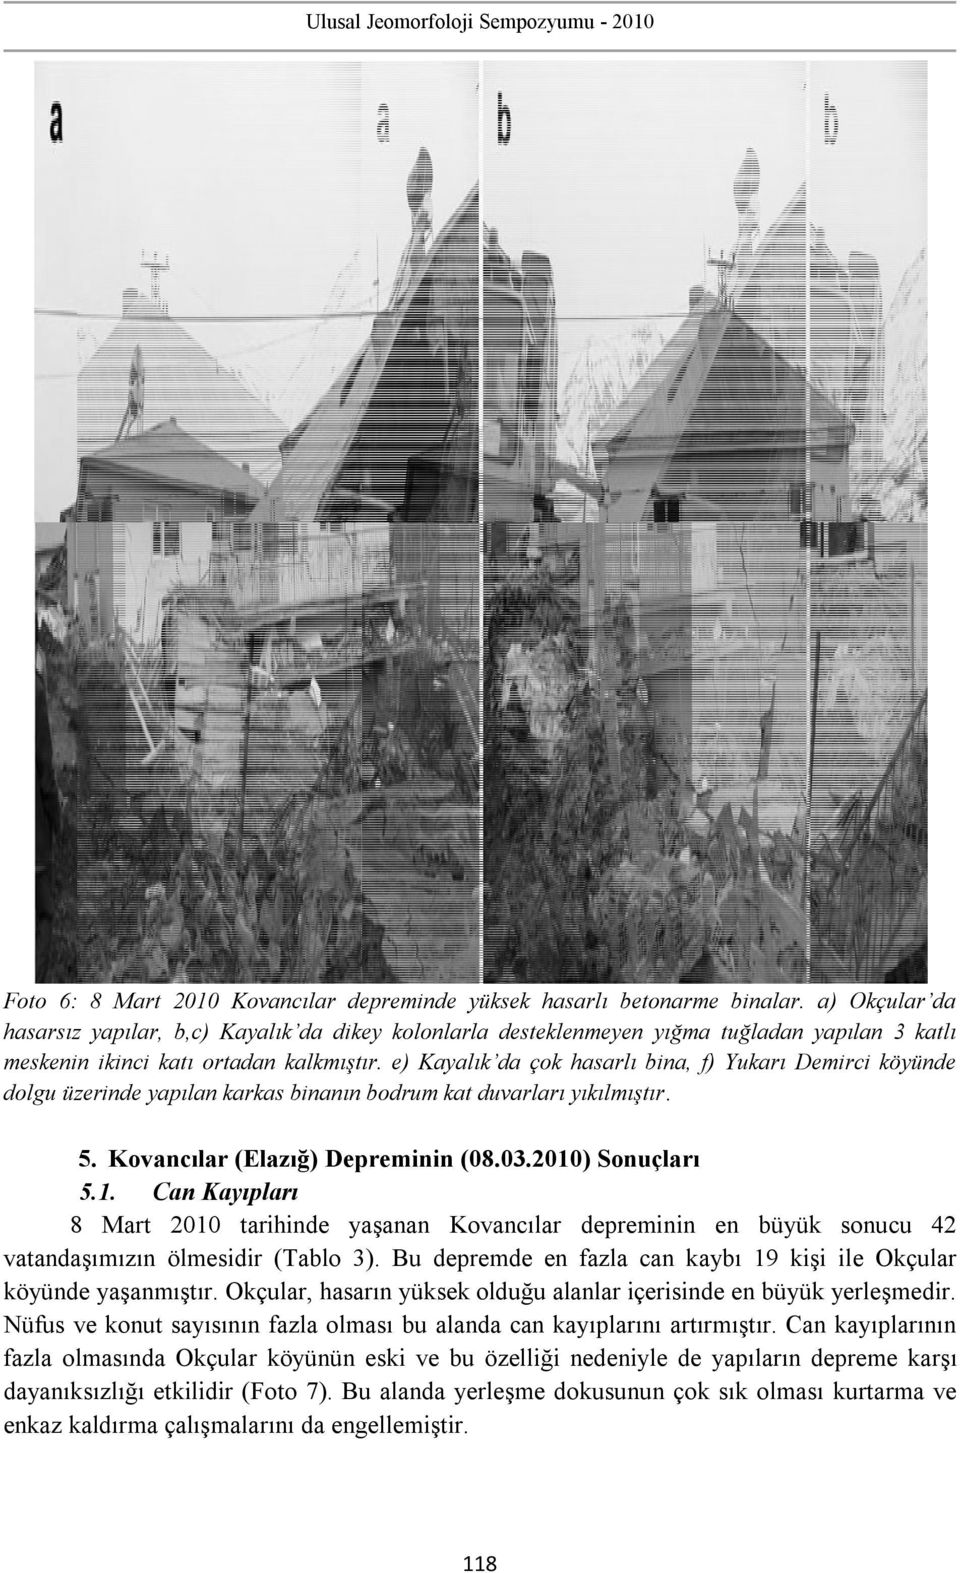 e) Kayalık da çok hasarlı bina, f) Yukarı Demirci köyünde dolgu üzerinde yapılan karkas binanın bodrum kat duvarları yıkılmıştır. 5. Kovancılar (Elazığ) Depreminin (08.03.2010